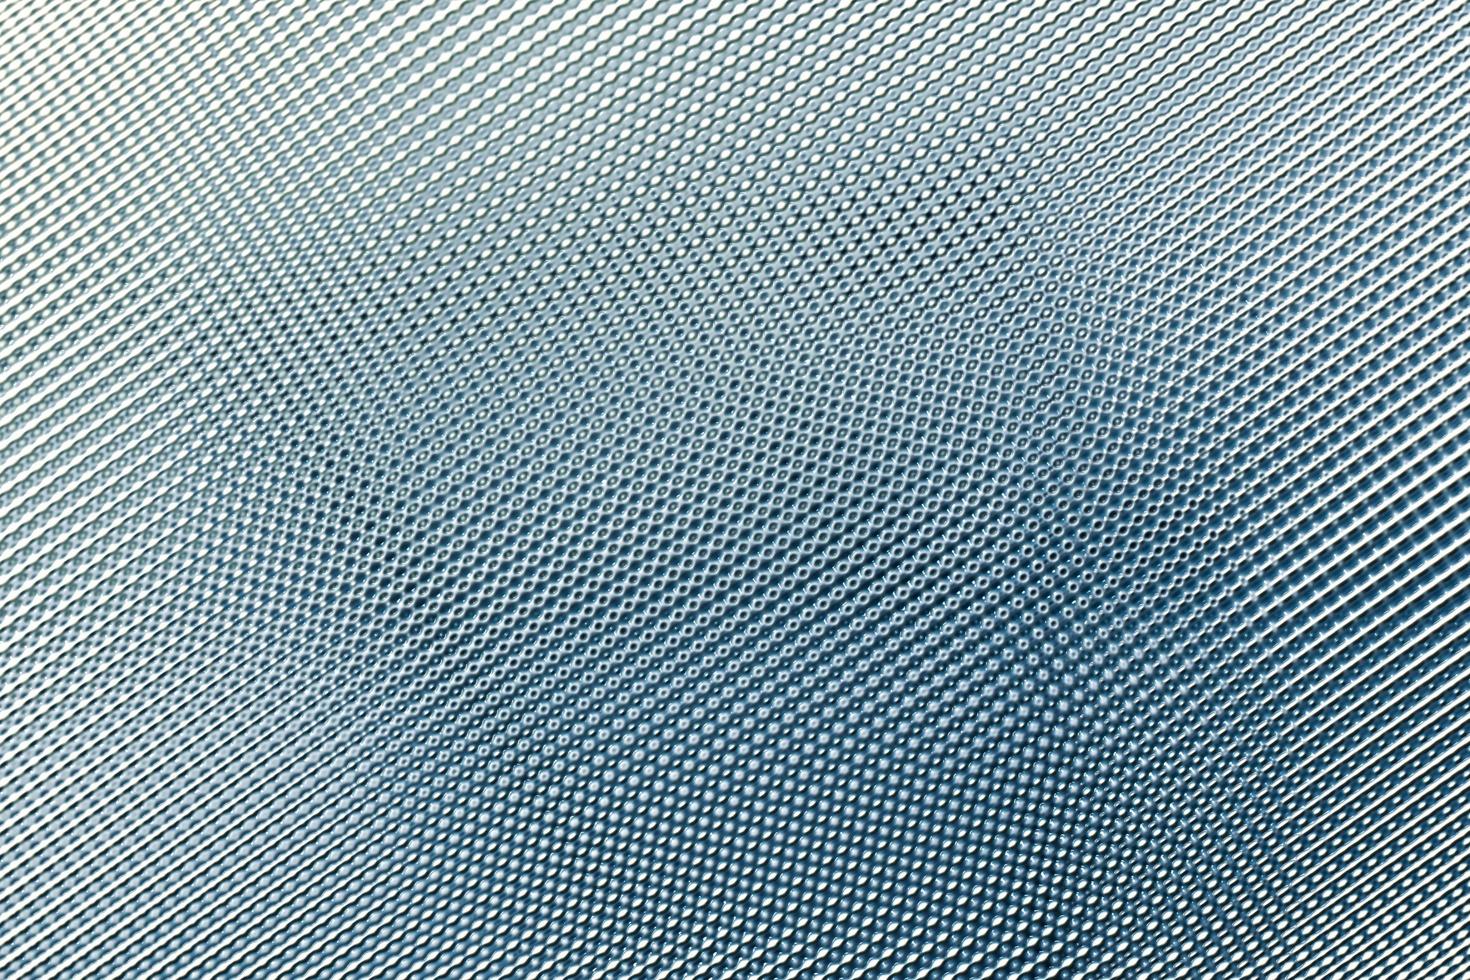 superfície de folha de plástico azul velha listrada, abstrato foto